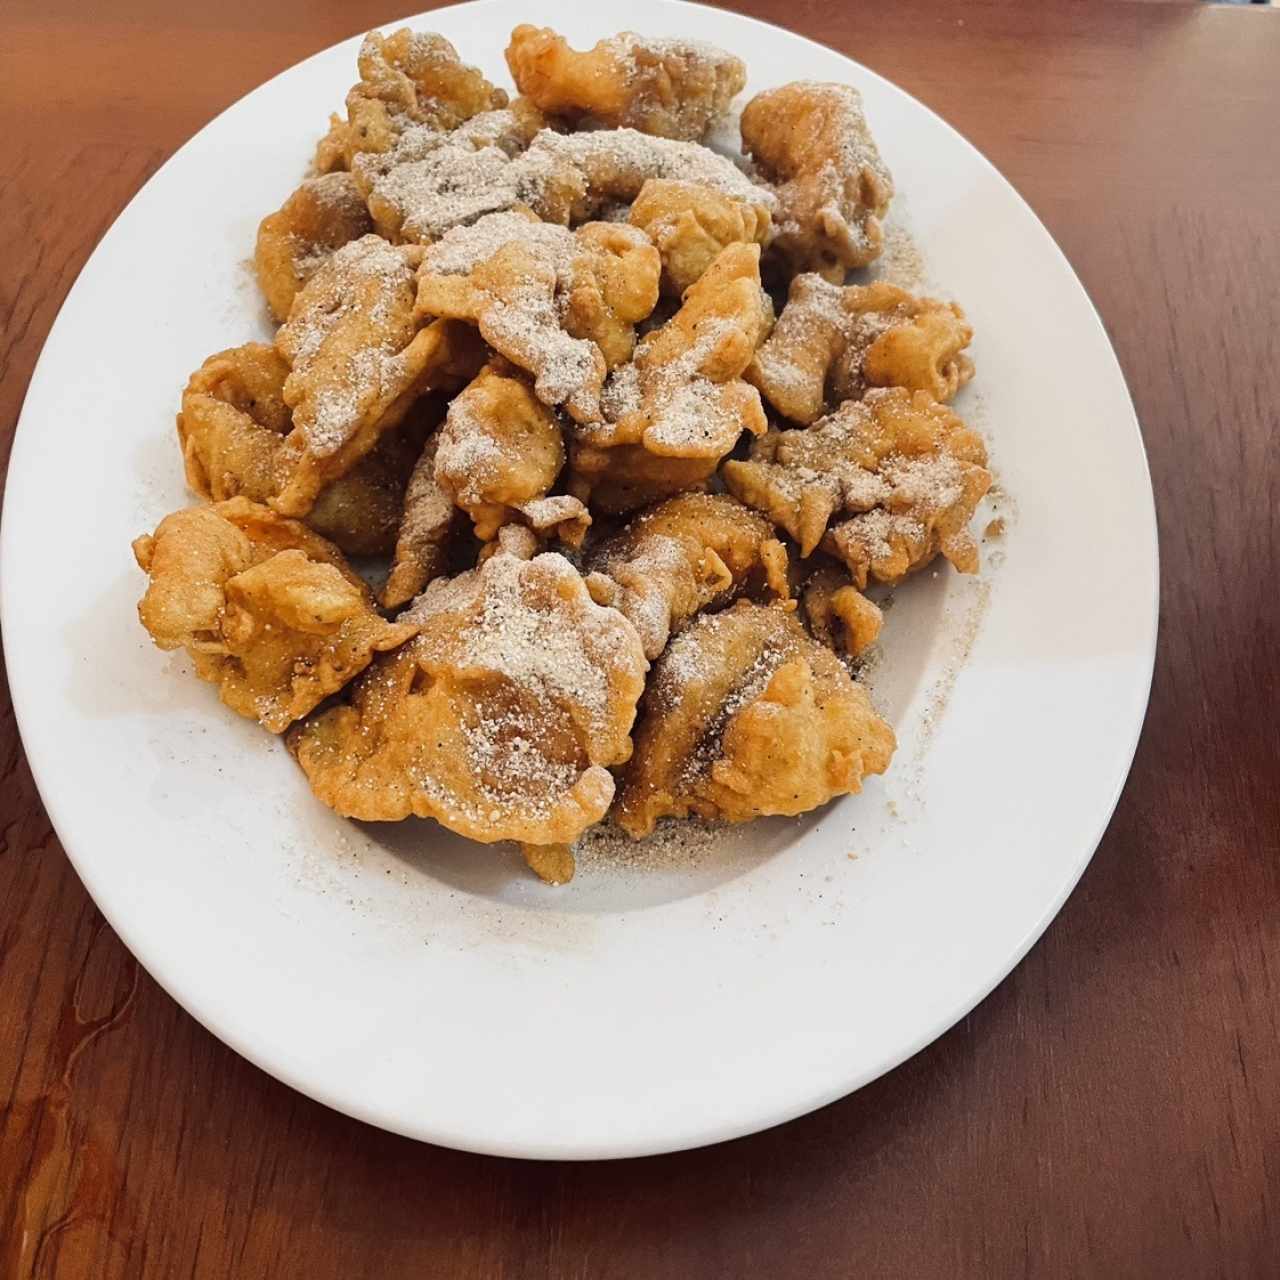 Tom Rang Muoi (Camarones fritos con sal)